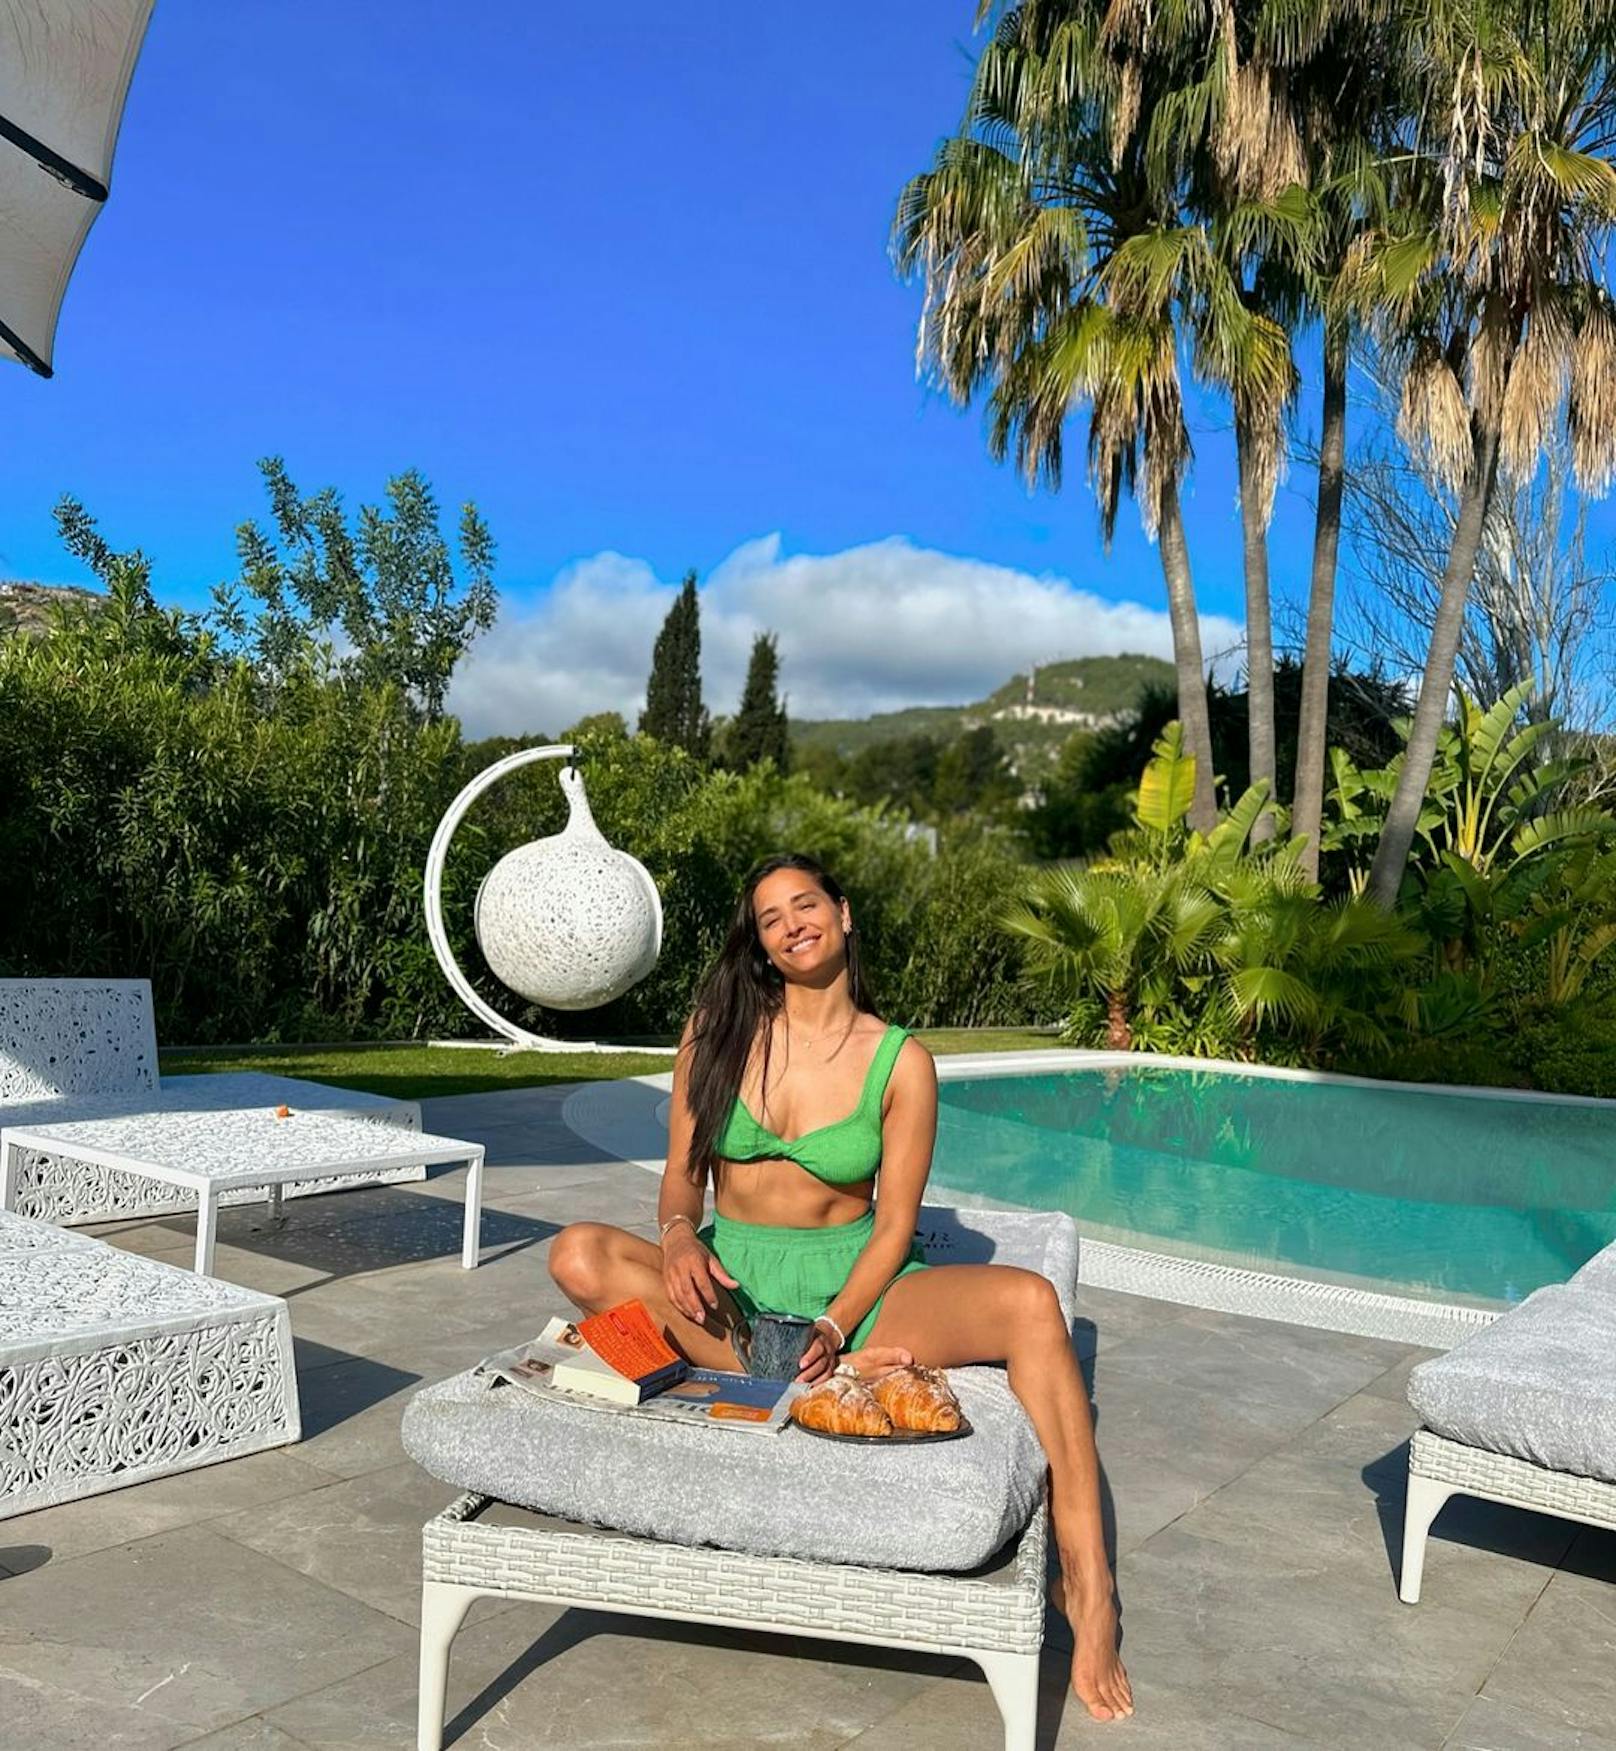 Amira Pocher ist eine erfahrene Urlauberin. Derzeit jettet sie durch verschiedene Länder und erfreut ihre Instagram-Fans mit regelmäßigen Bikini-Fotos. 